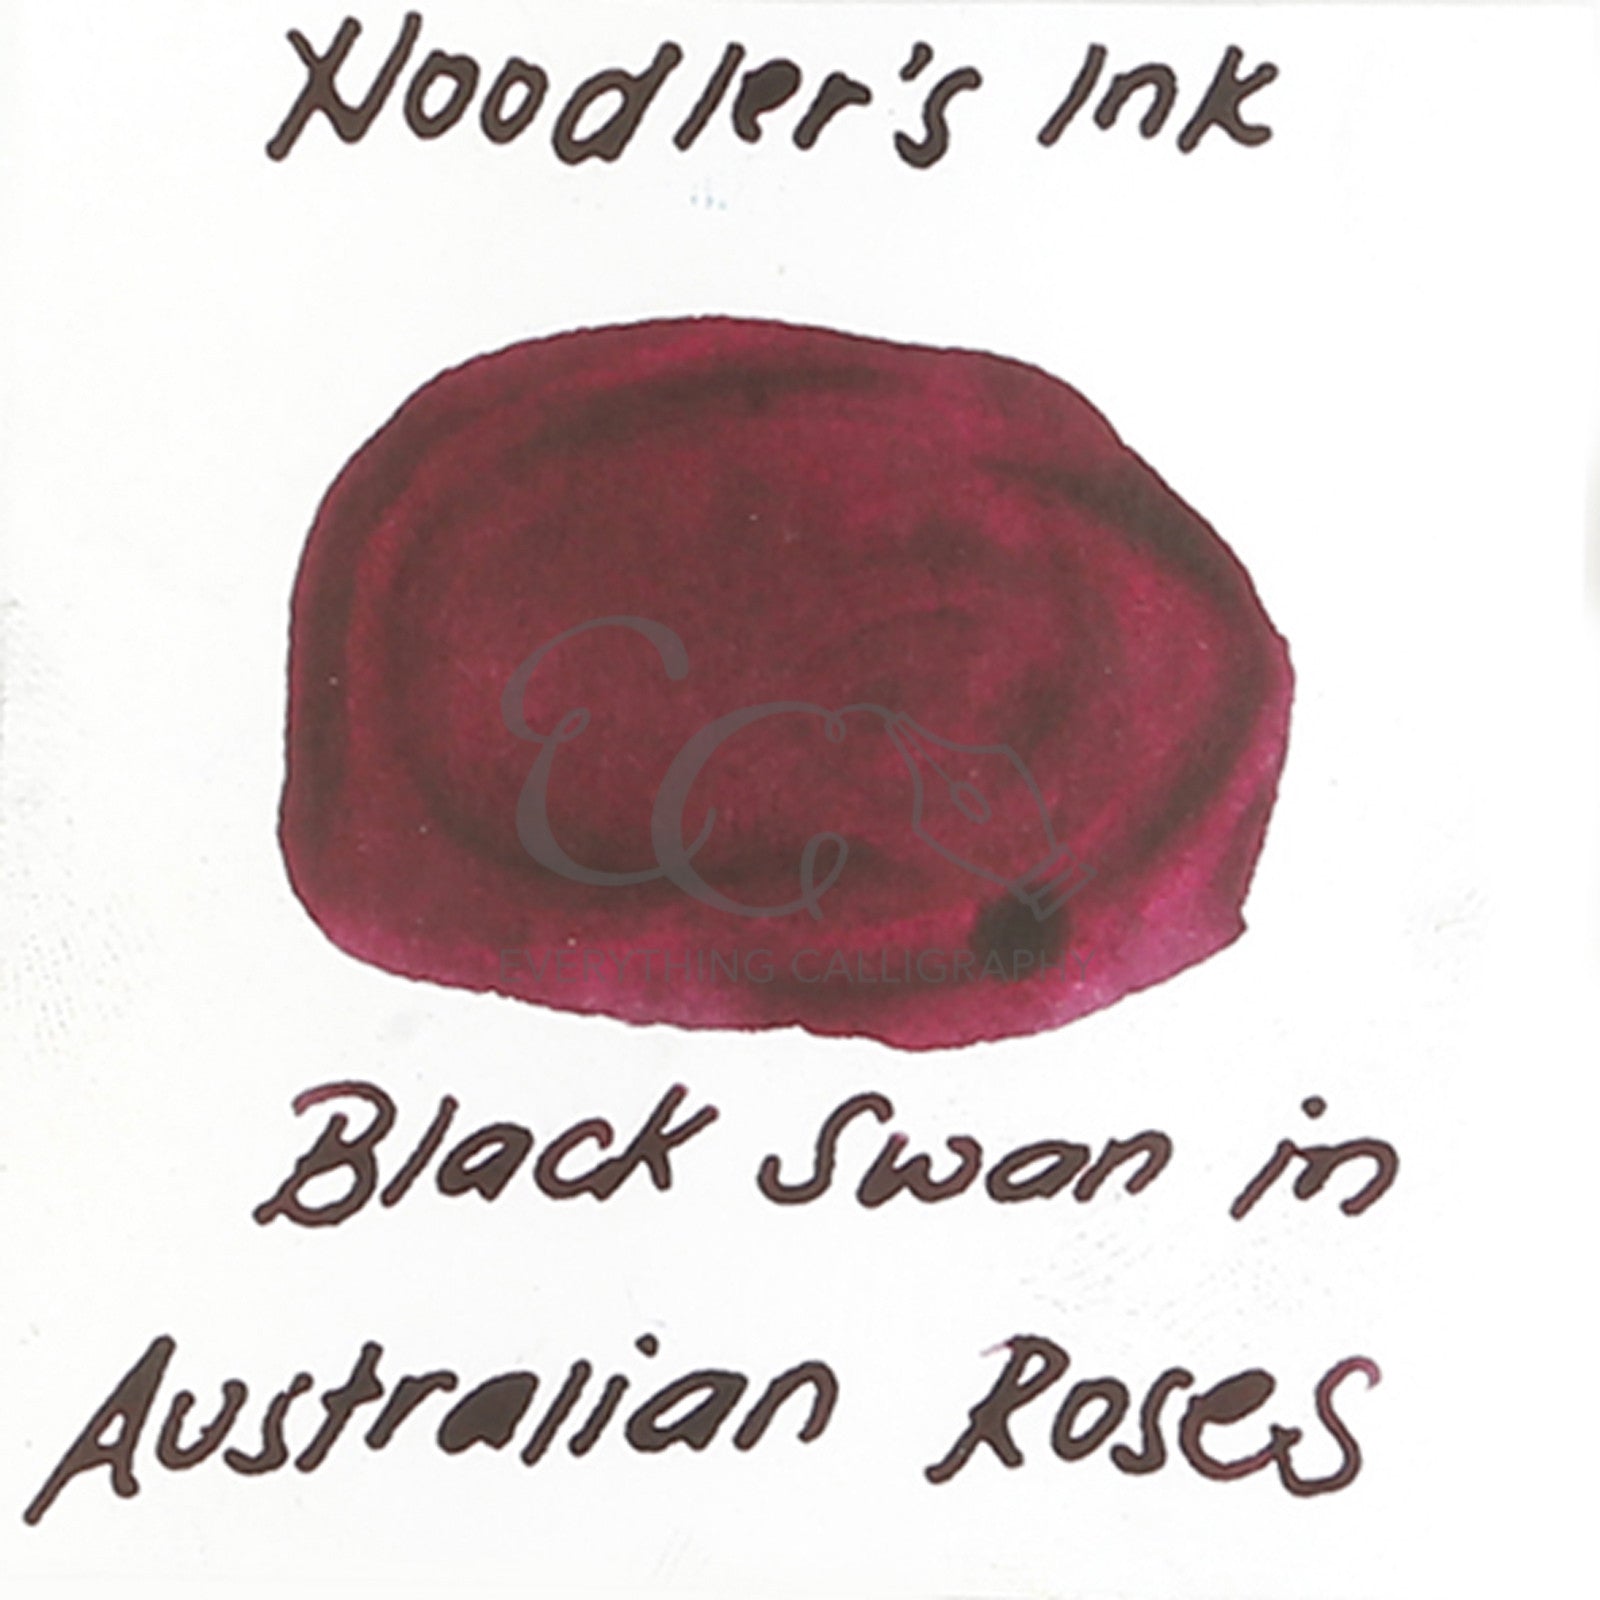 Noodler's Ink Fountain Pen Bottled Ink, 3oz - Shahs Rose